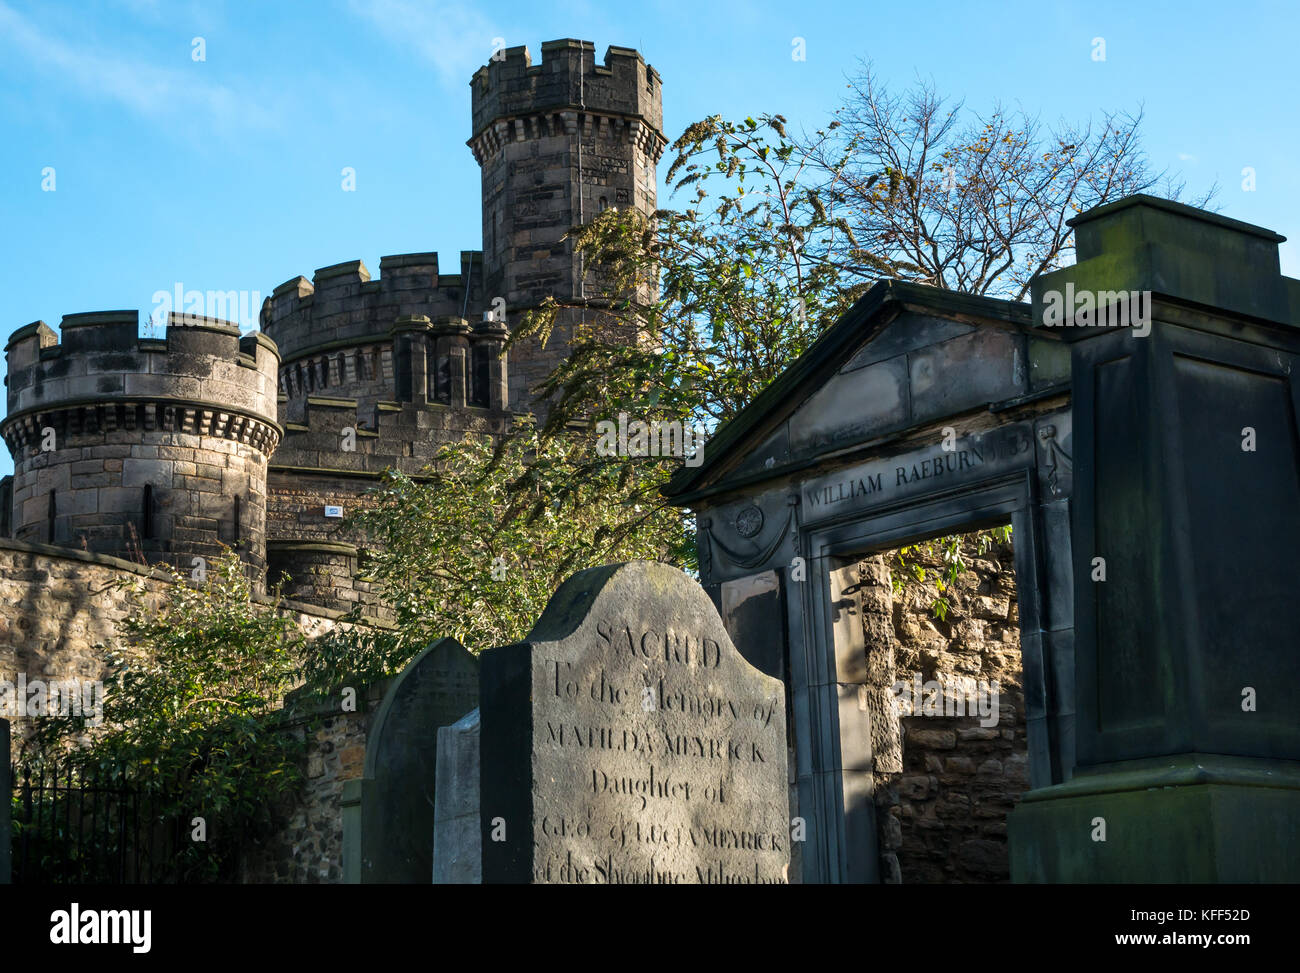 Gravestones and mausoleum of William Raeburn in Old Calton burial ground cemetery, Edinburgh, Scotland, UK Stock Photo